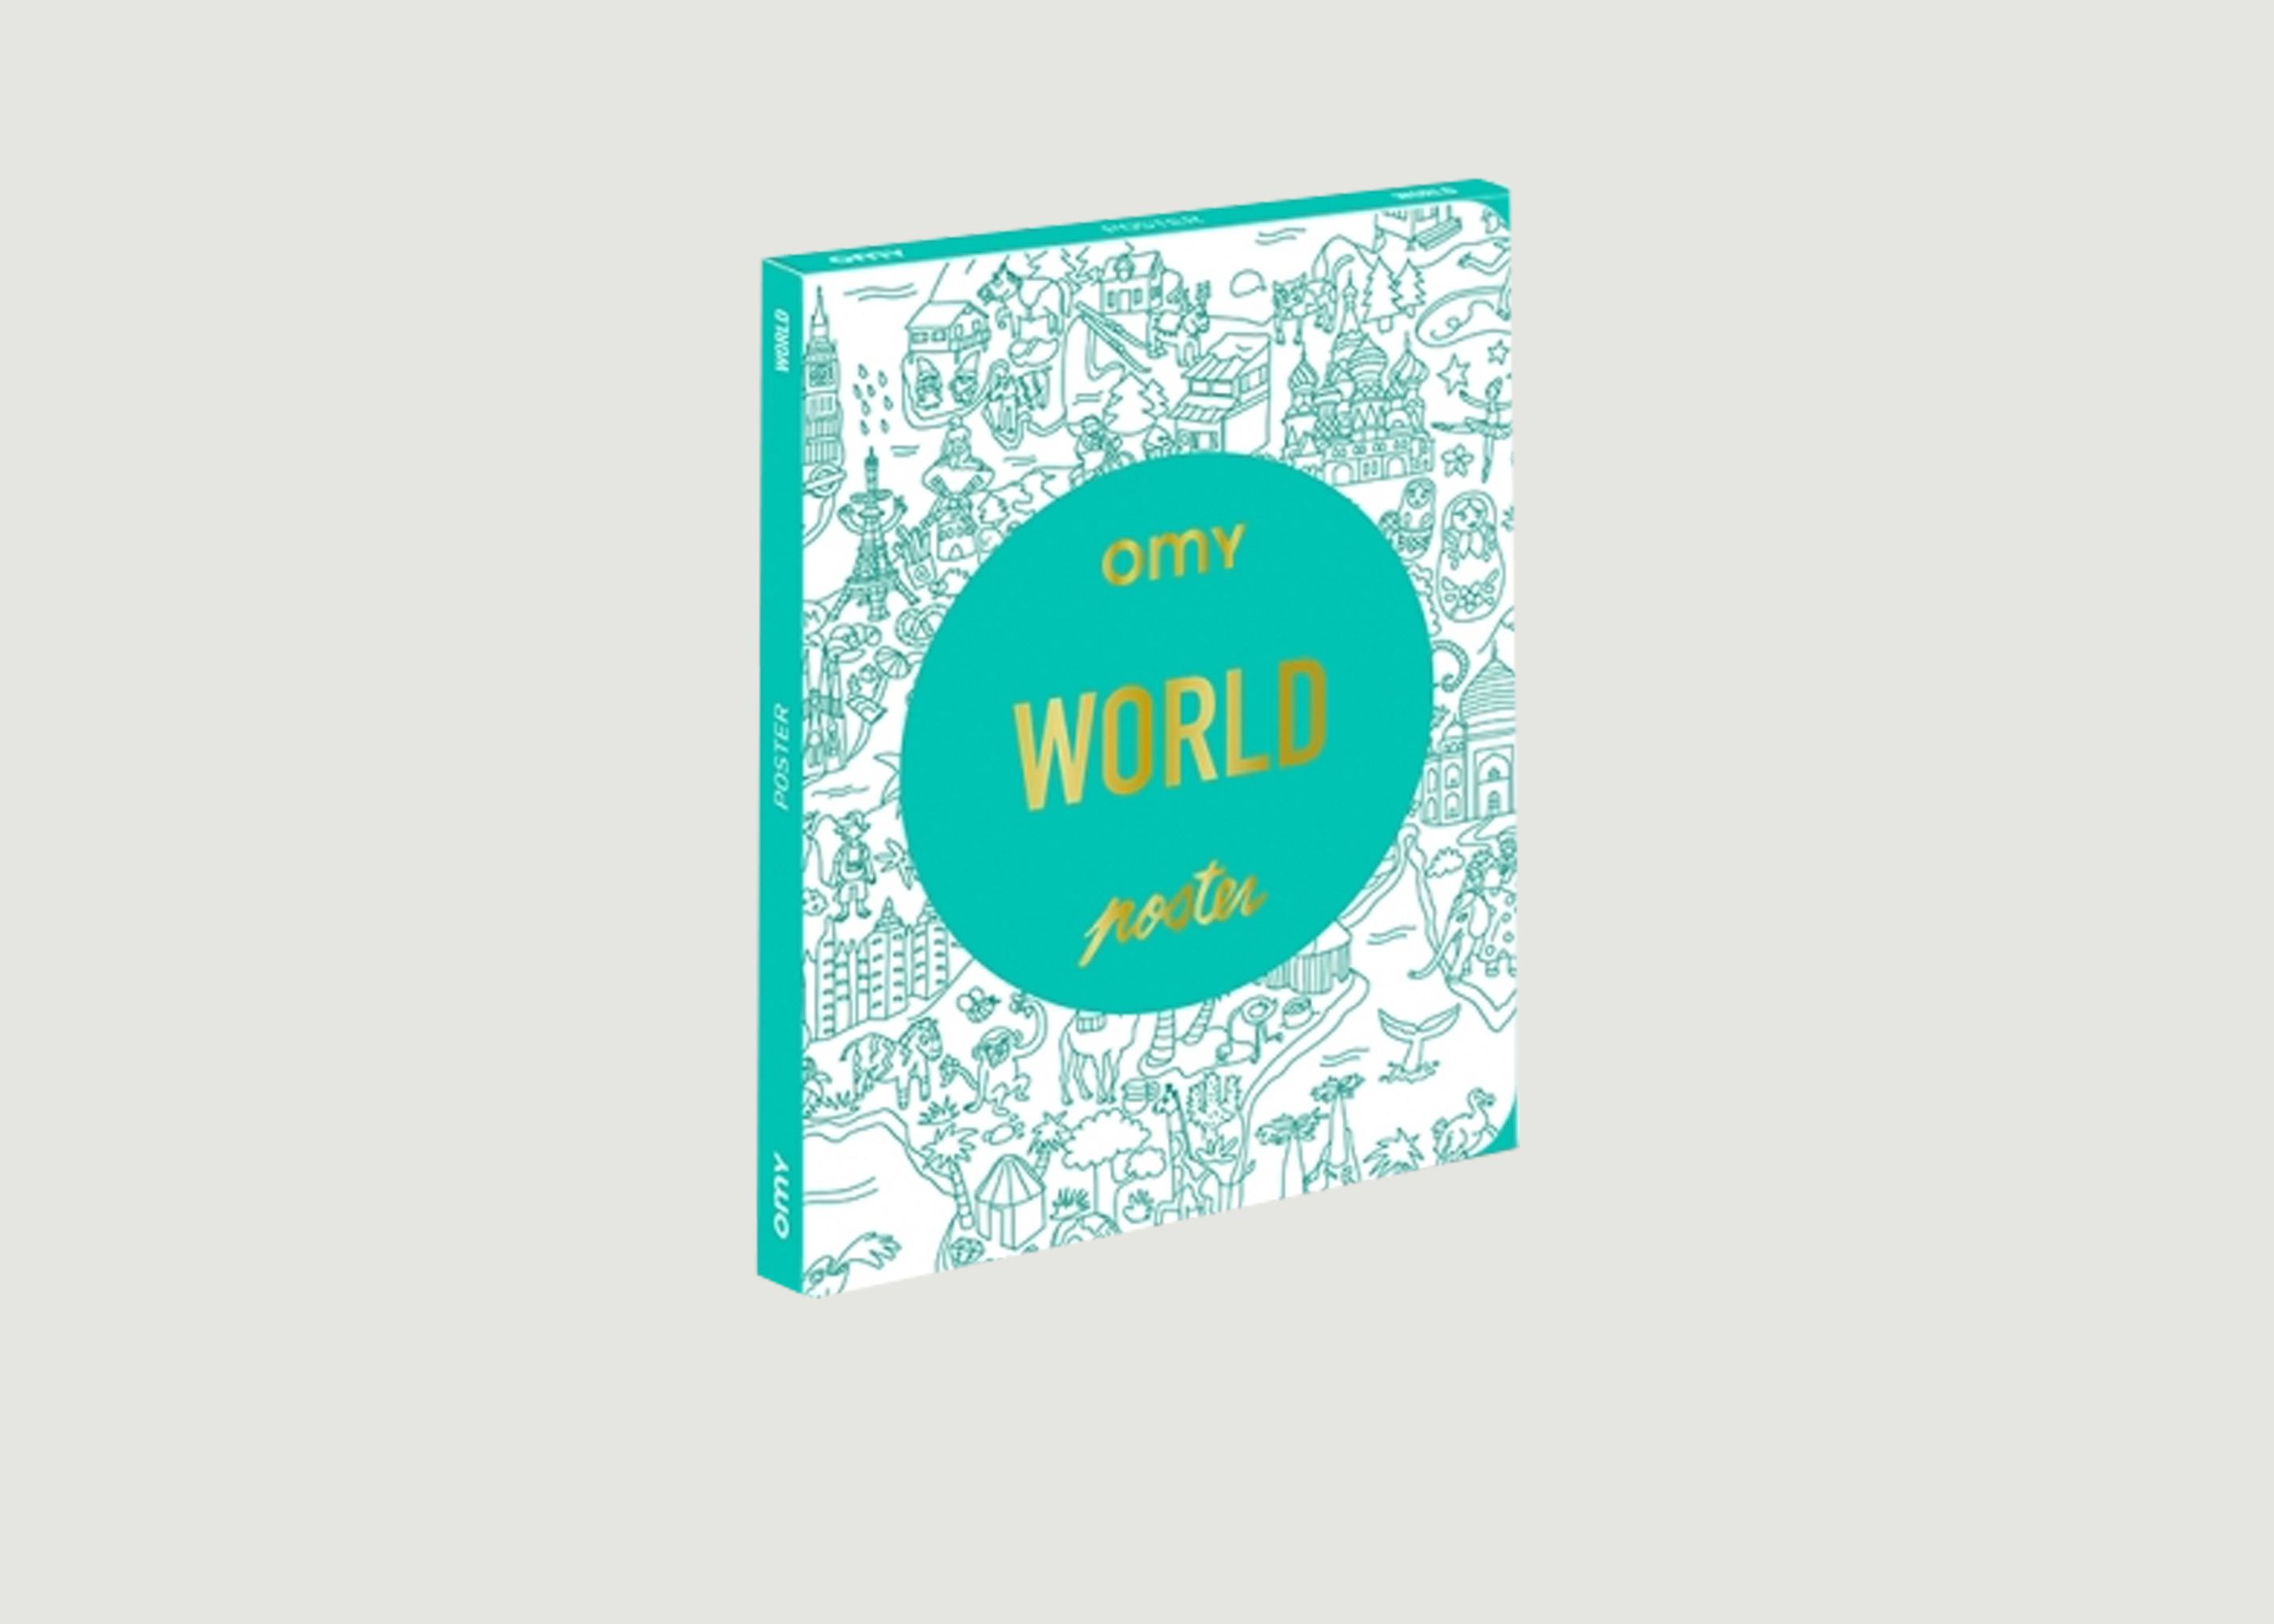 World Poster - Omy